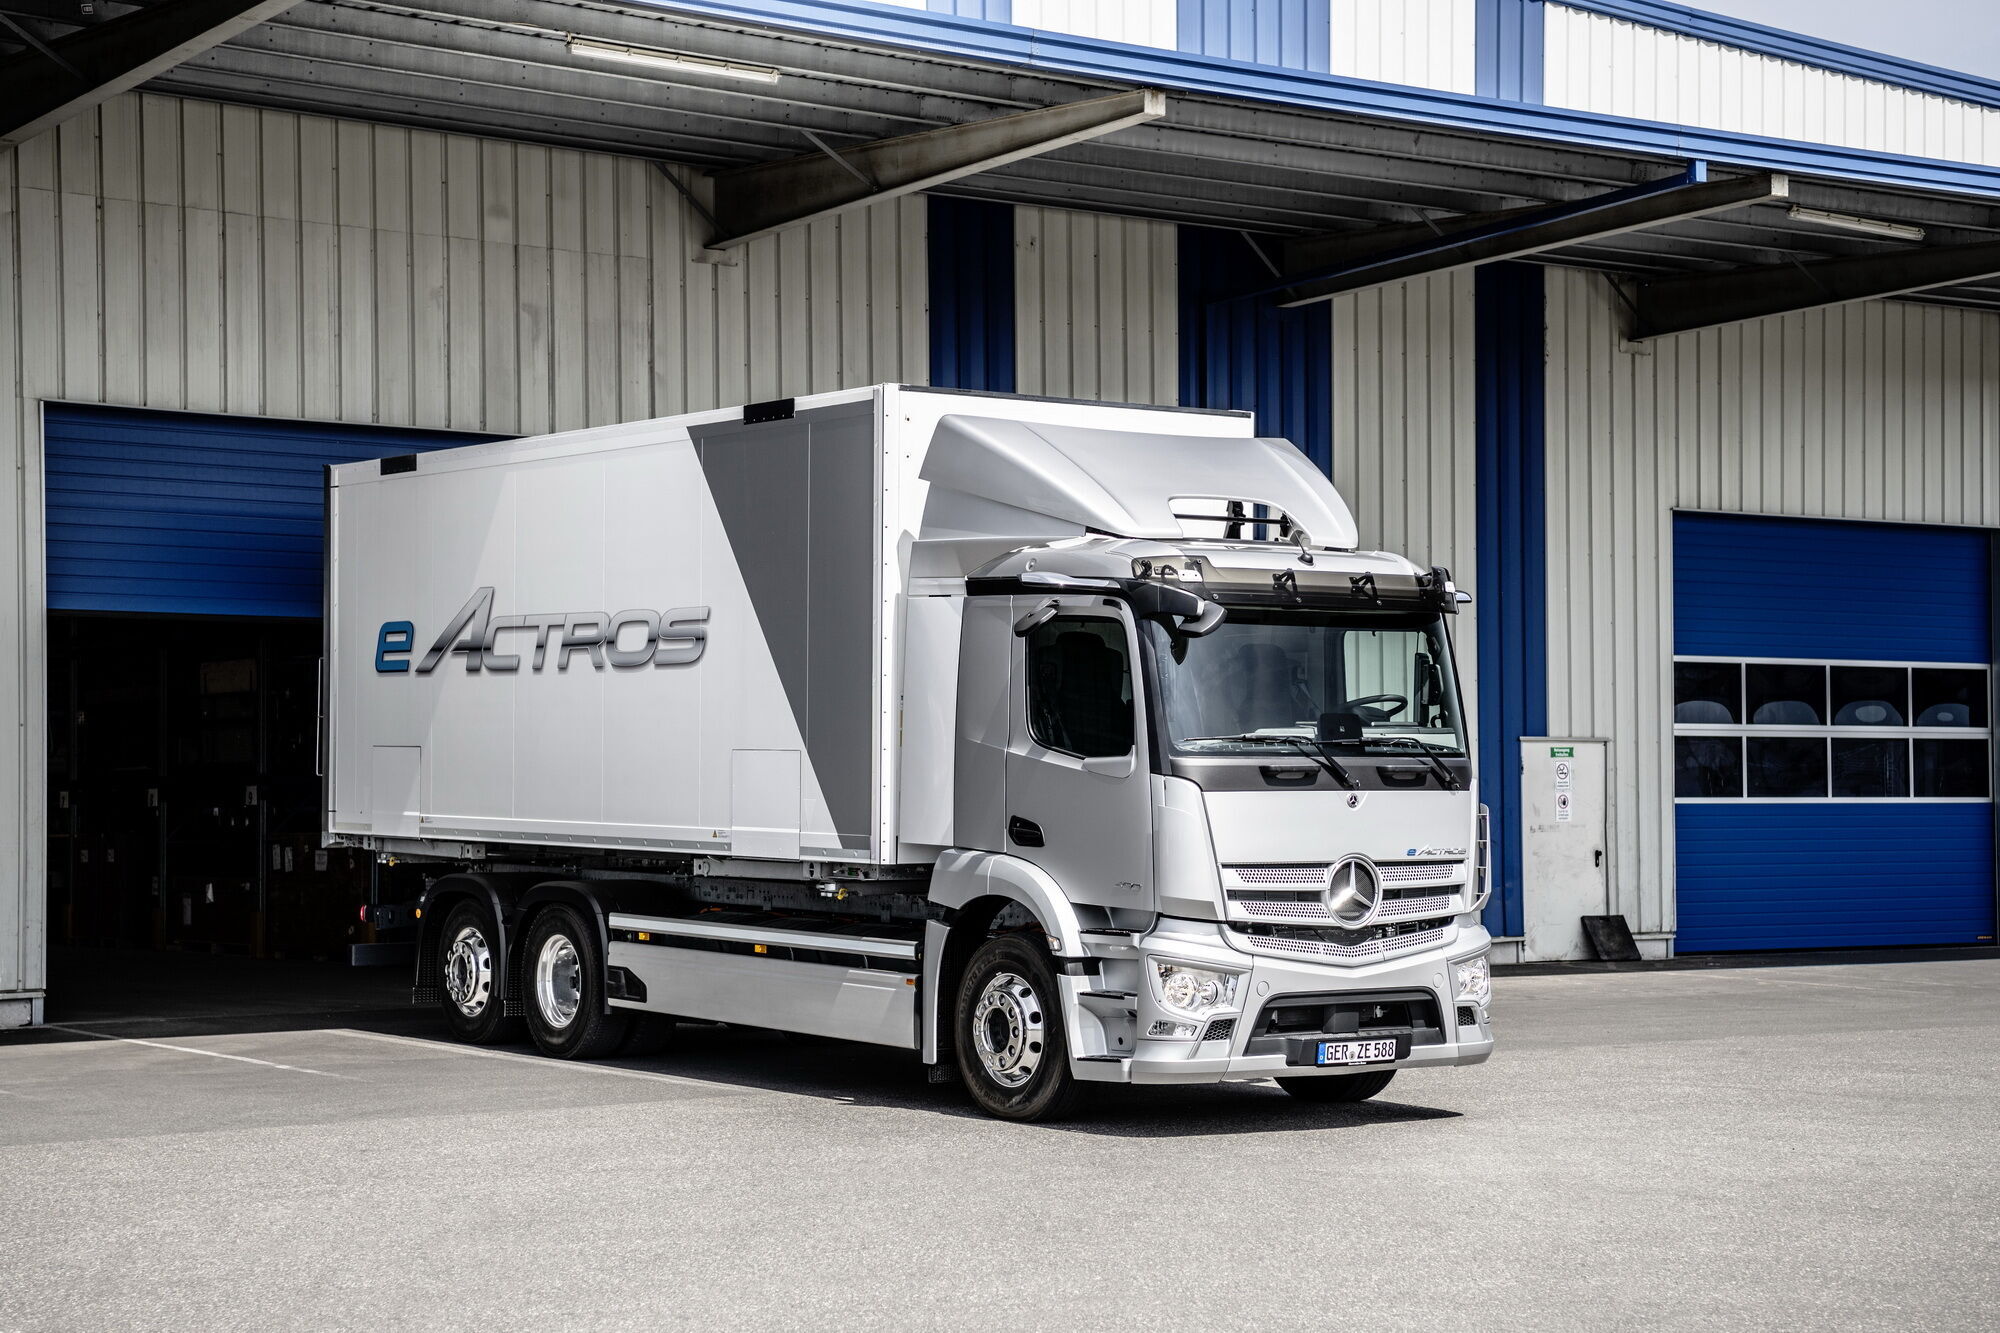 30 июня нынешнего года компания Daimler Trucks презентовала полностью электрический грузовик eActros